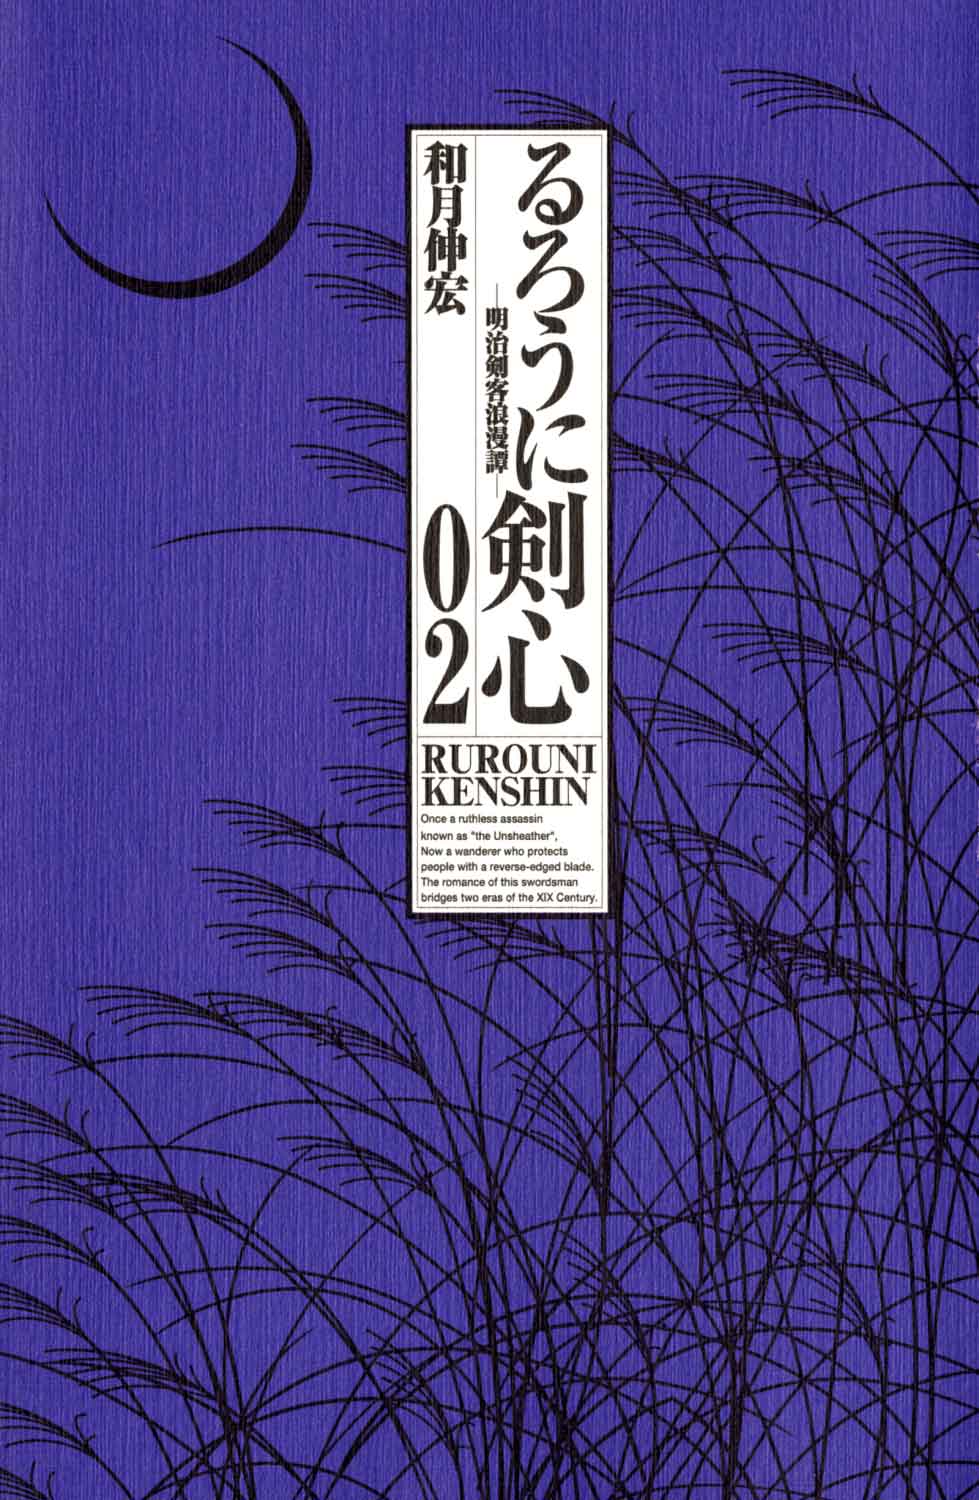 Rurouni Kenshin chap 9 Ch%C2%B2%E2%8C%A1ng%20009--Vnsharing.net-_RurouniKenshin_Vol2_Ch9-003